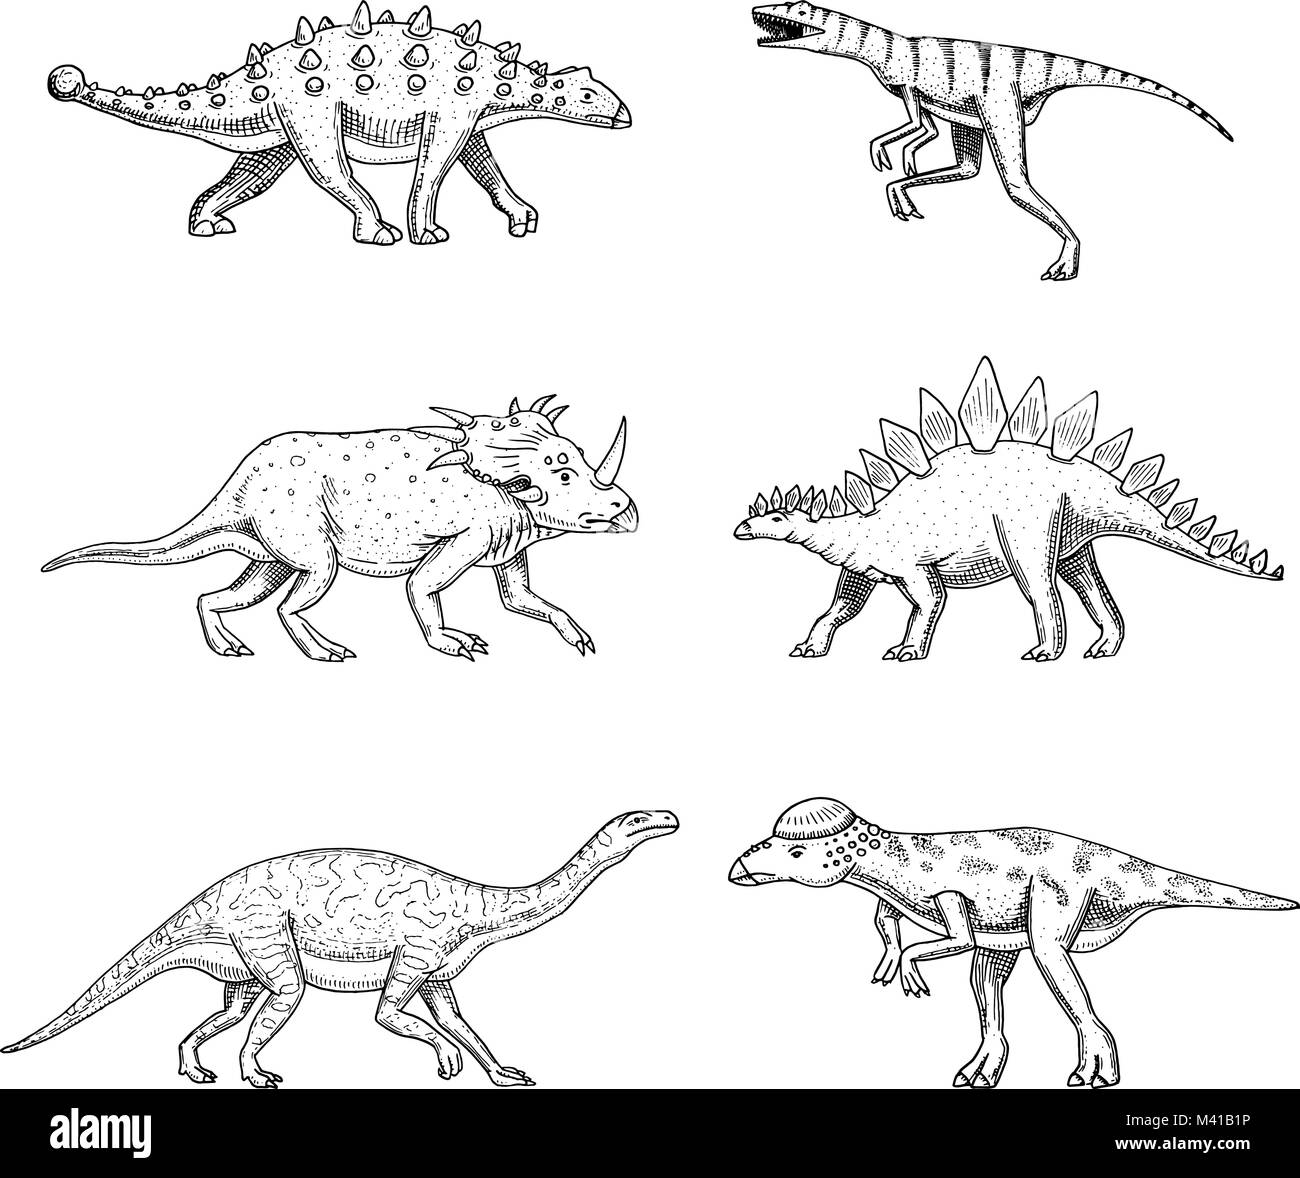 Dinosaurier, Triceratops, Barosaurus, breit Eidechse, Stegosaurus, Pachycephalosaurus, Diplodocus, Ankylosaurus, Velociraptor, Skelette, Fossilien. Prähistorische Reptilien, Tier Hand gezeichnet Vektor. Stock Vektor